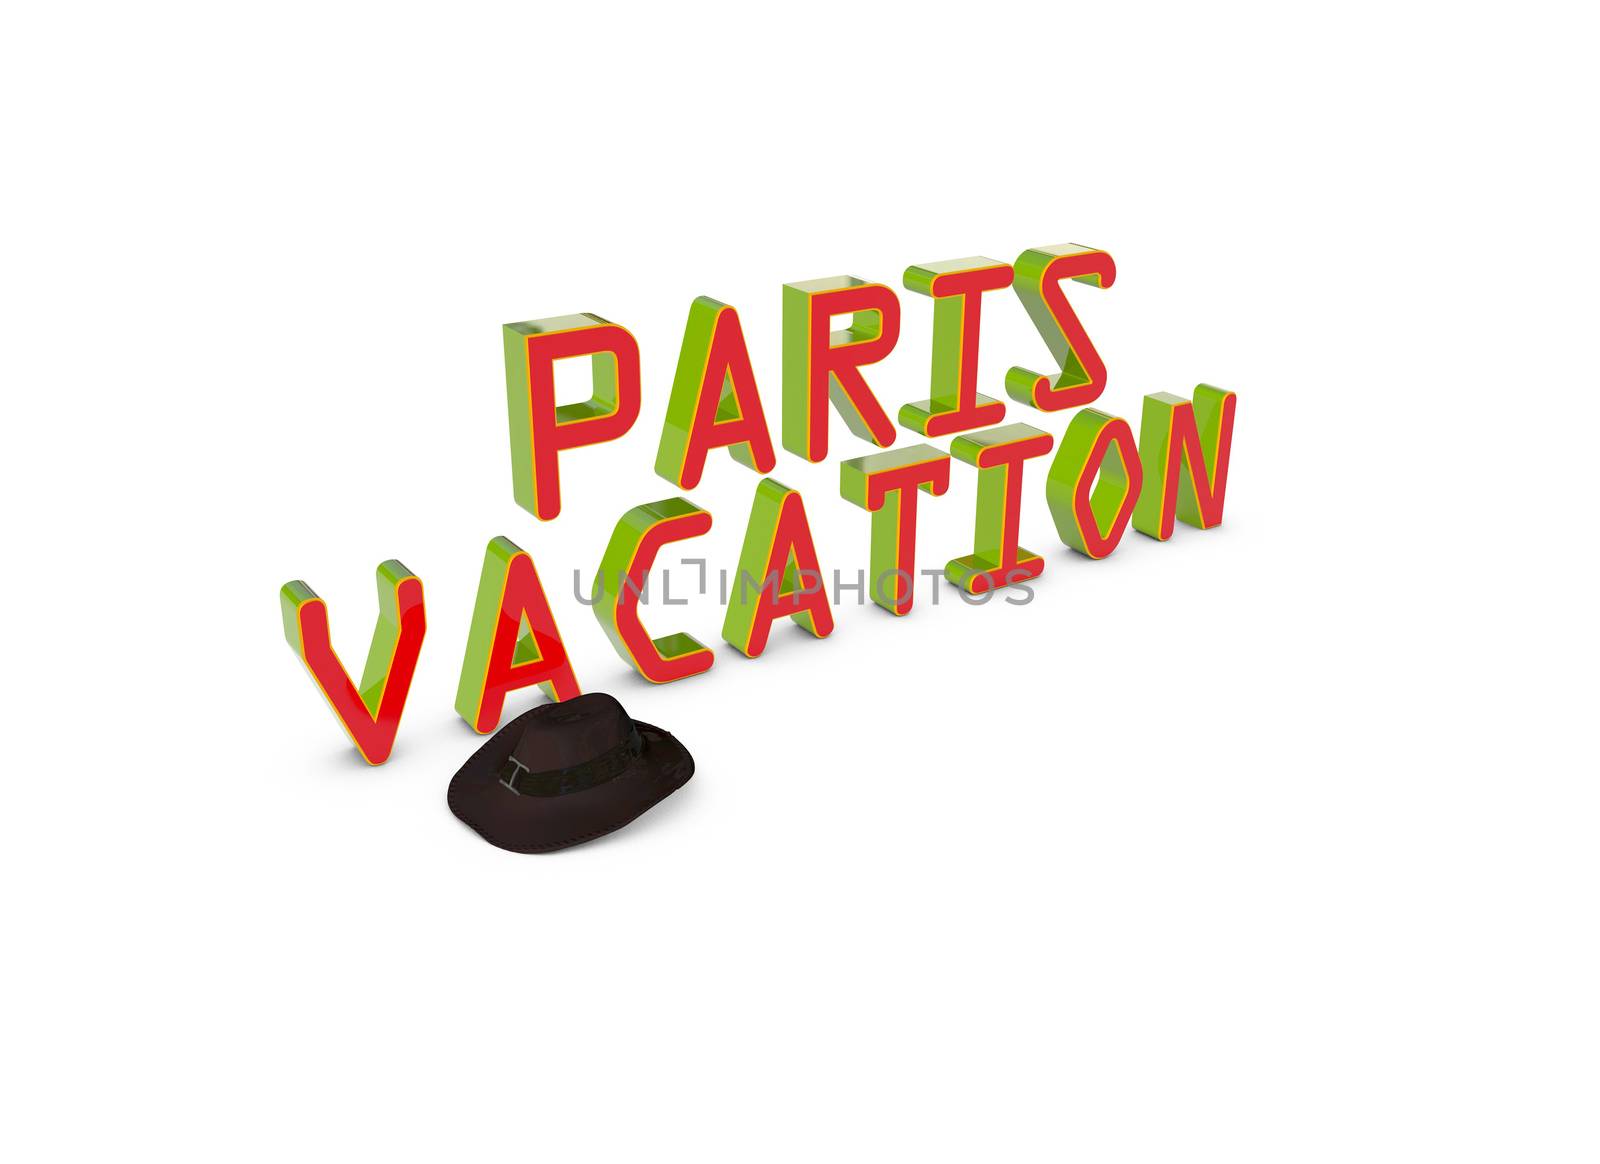 Paris vacation by xizang